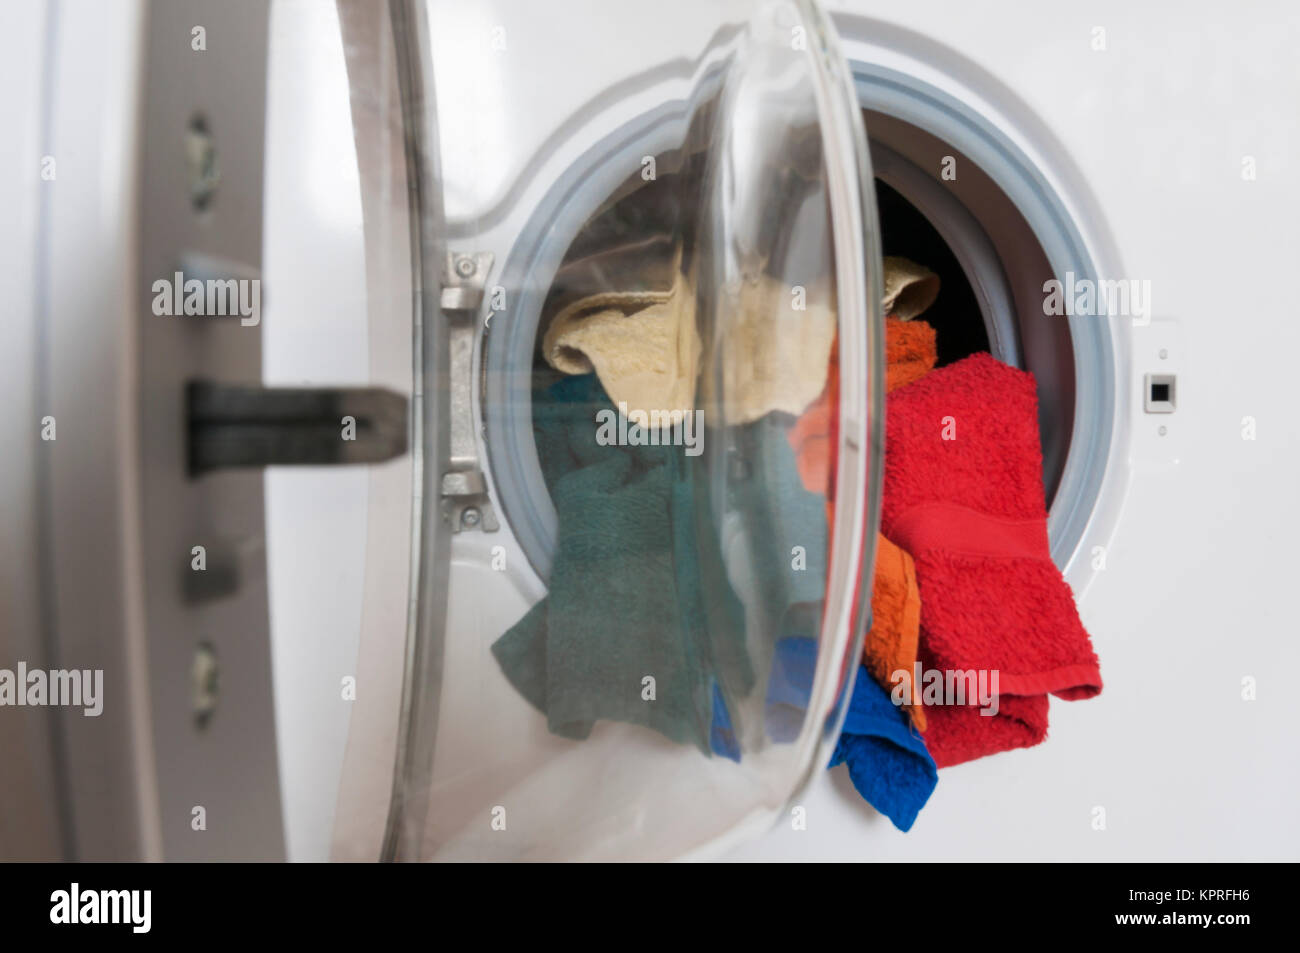 Hausarbeit, Waschservice, Waschmaschine mit bunter Waesche. Stock Photo